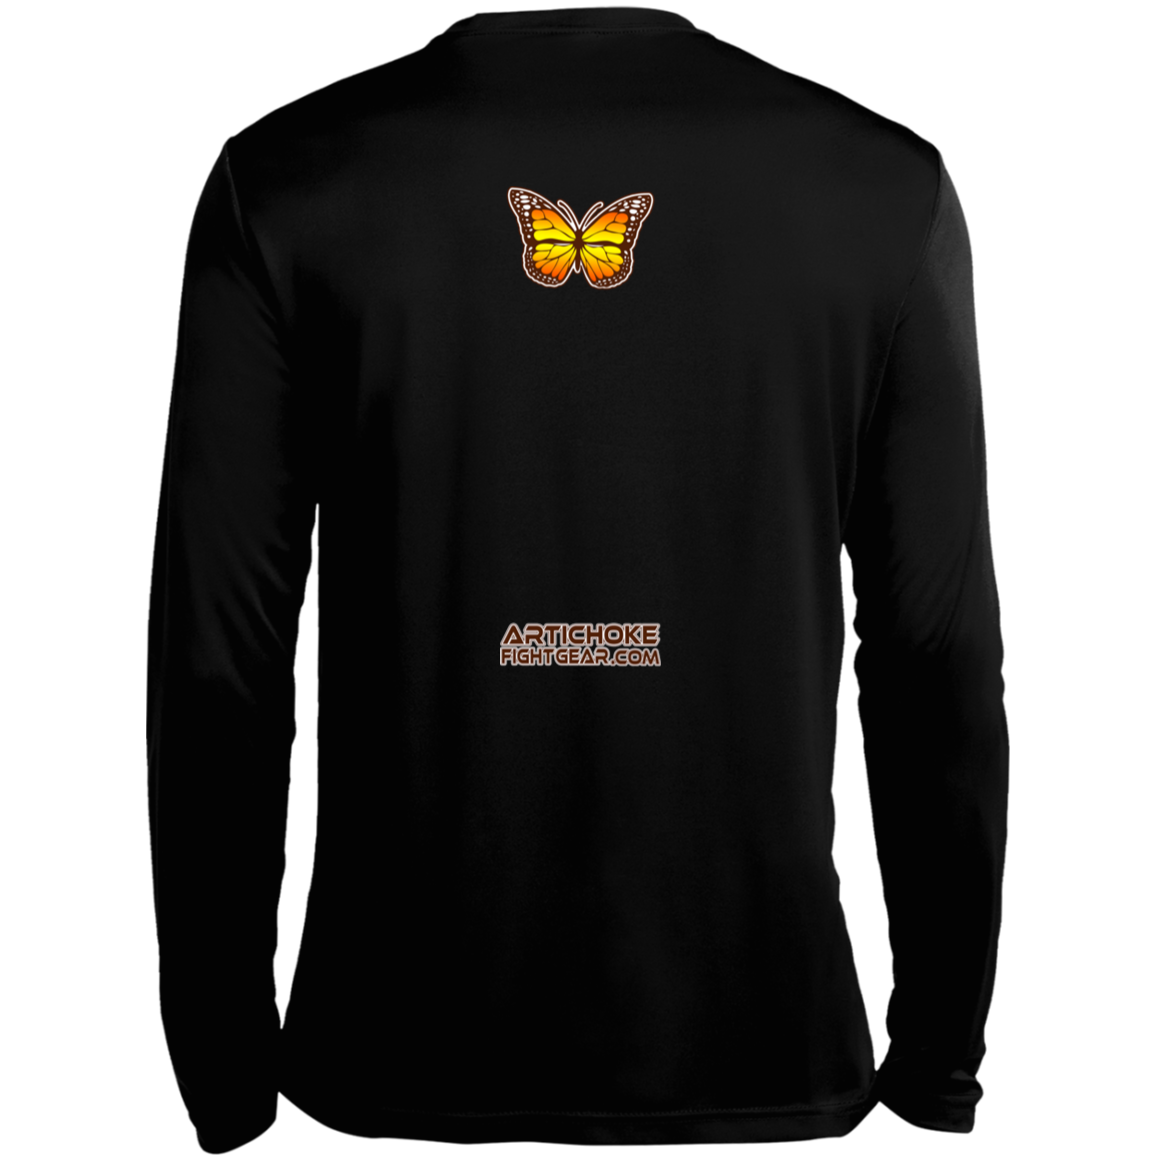 Artichoke Fight Gear Custom Design #6. Lepidopterology (Study of butterflies). Butterfly Guard. Moisture-Wicking Long Sleeve